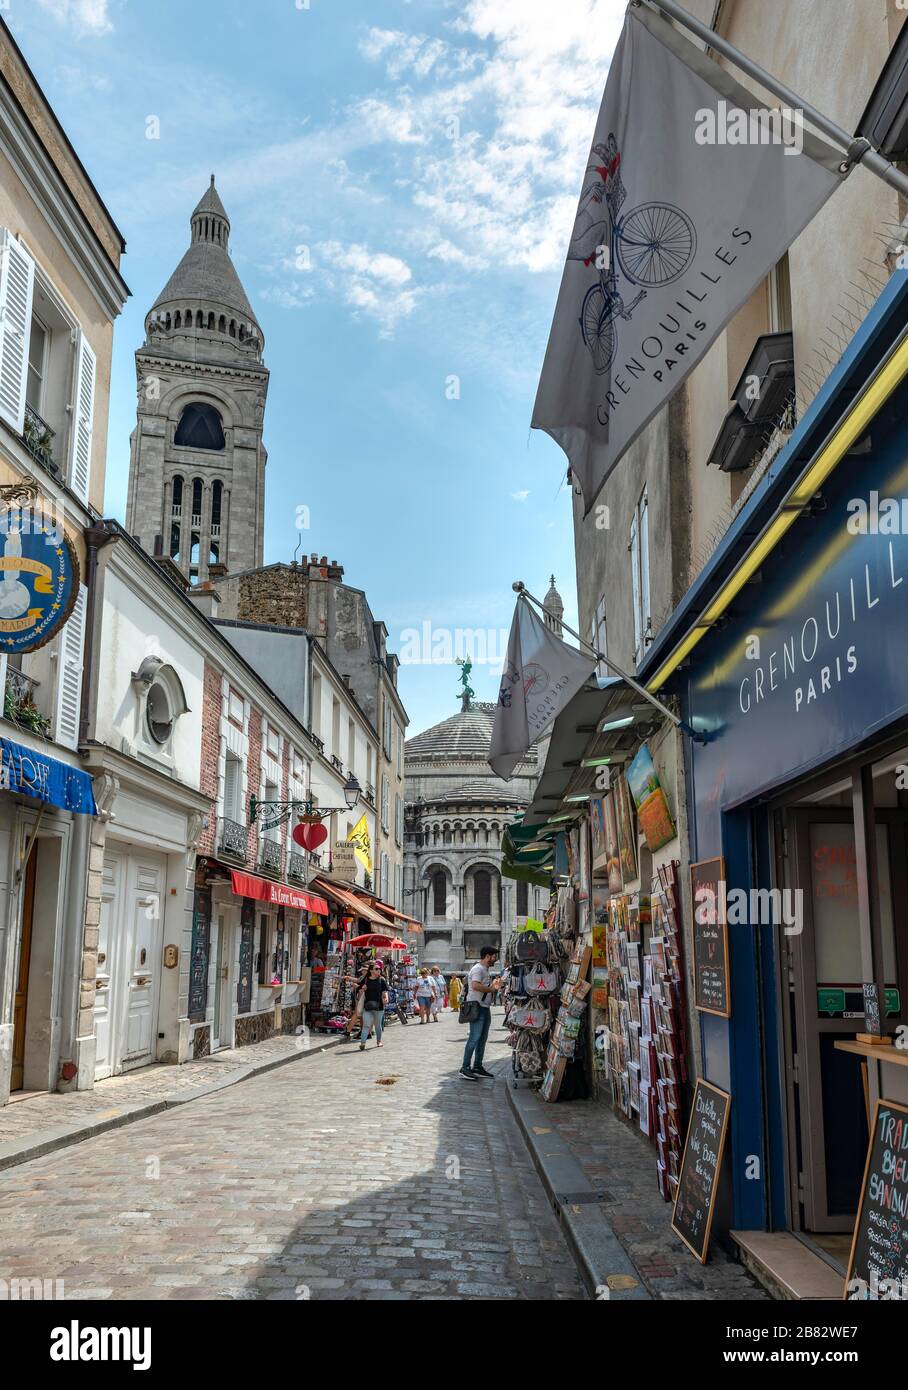 Rue avec boutiques à Montmartre surplombant le dôme de la basilique du Sacré-coeur, Paris, Ile-de-France, France Banque D'Images